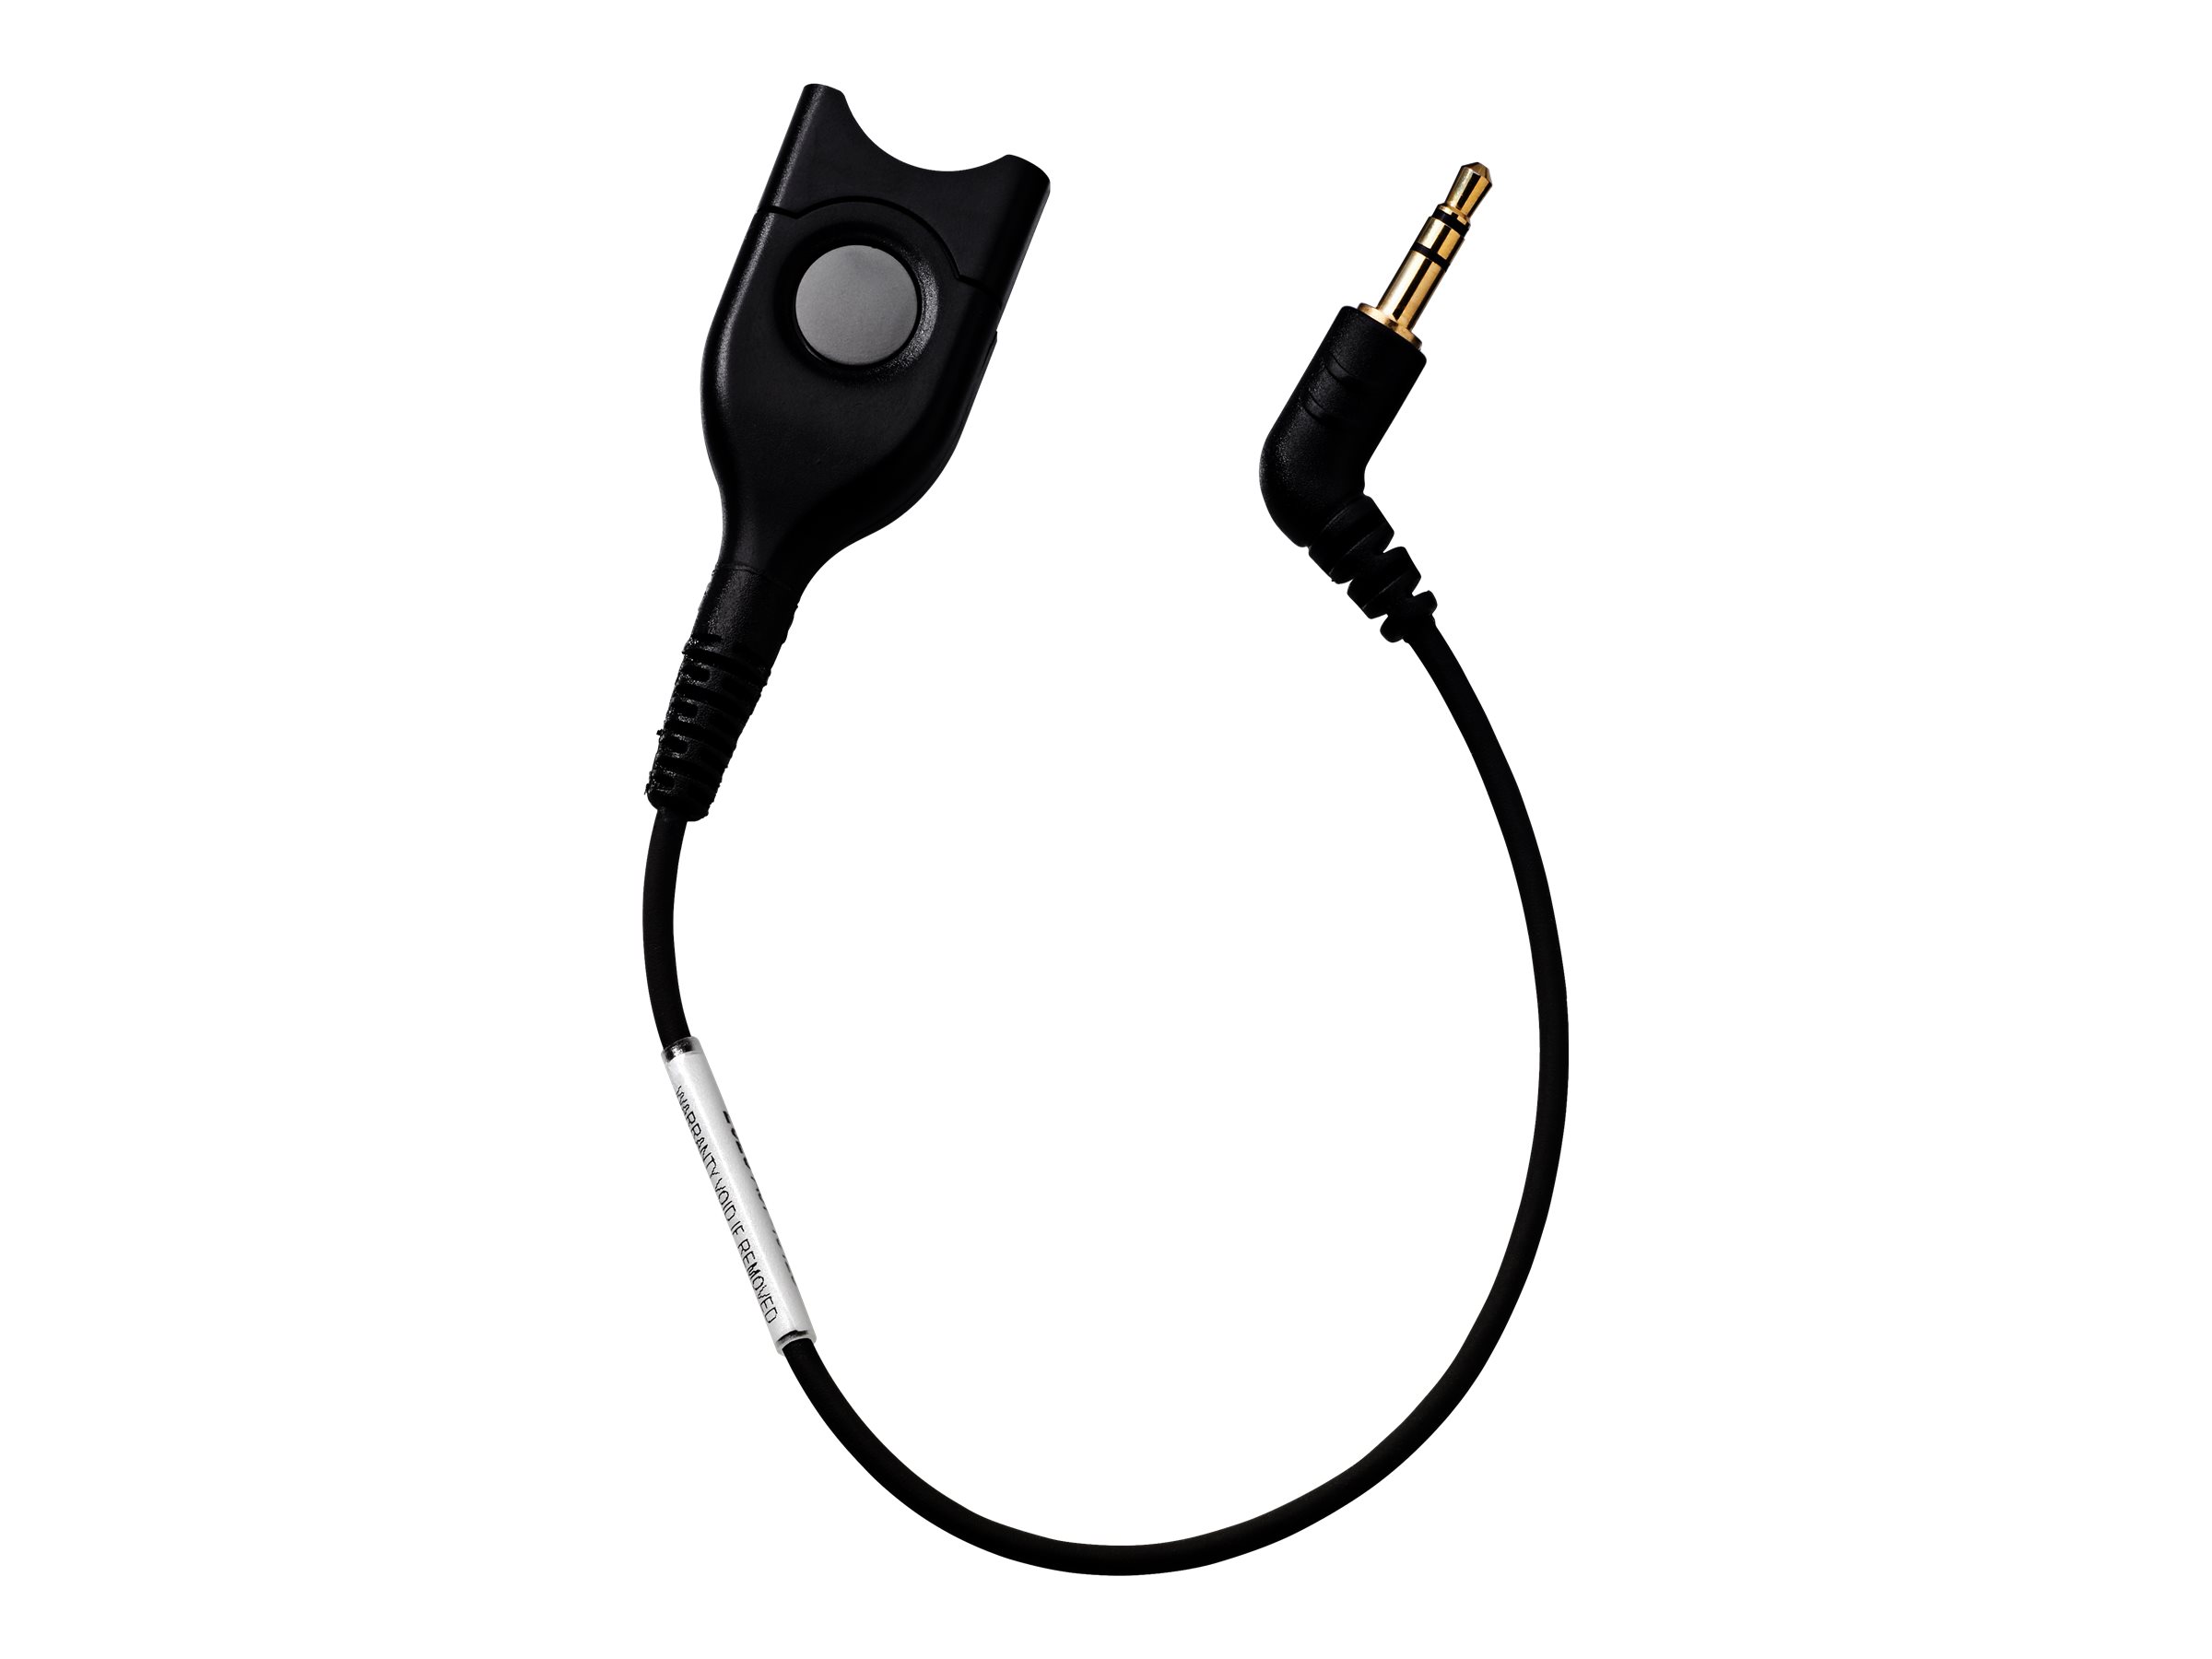 EPOS CCEL 193 - Câble pour casque micro - EasyDisconnect pour mini-phone stereo 3.5 mm mâle - 1000852 - Câbles pour écouteurs